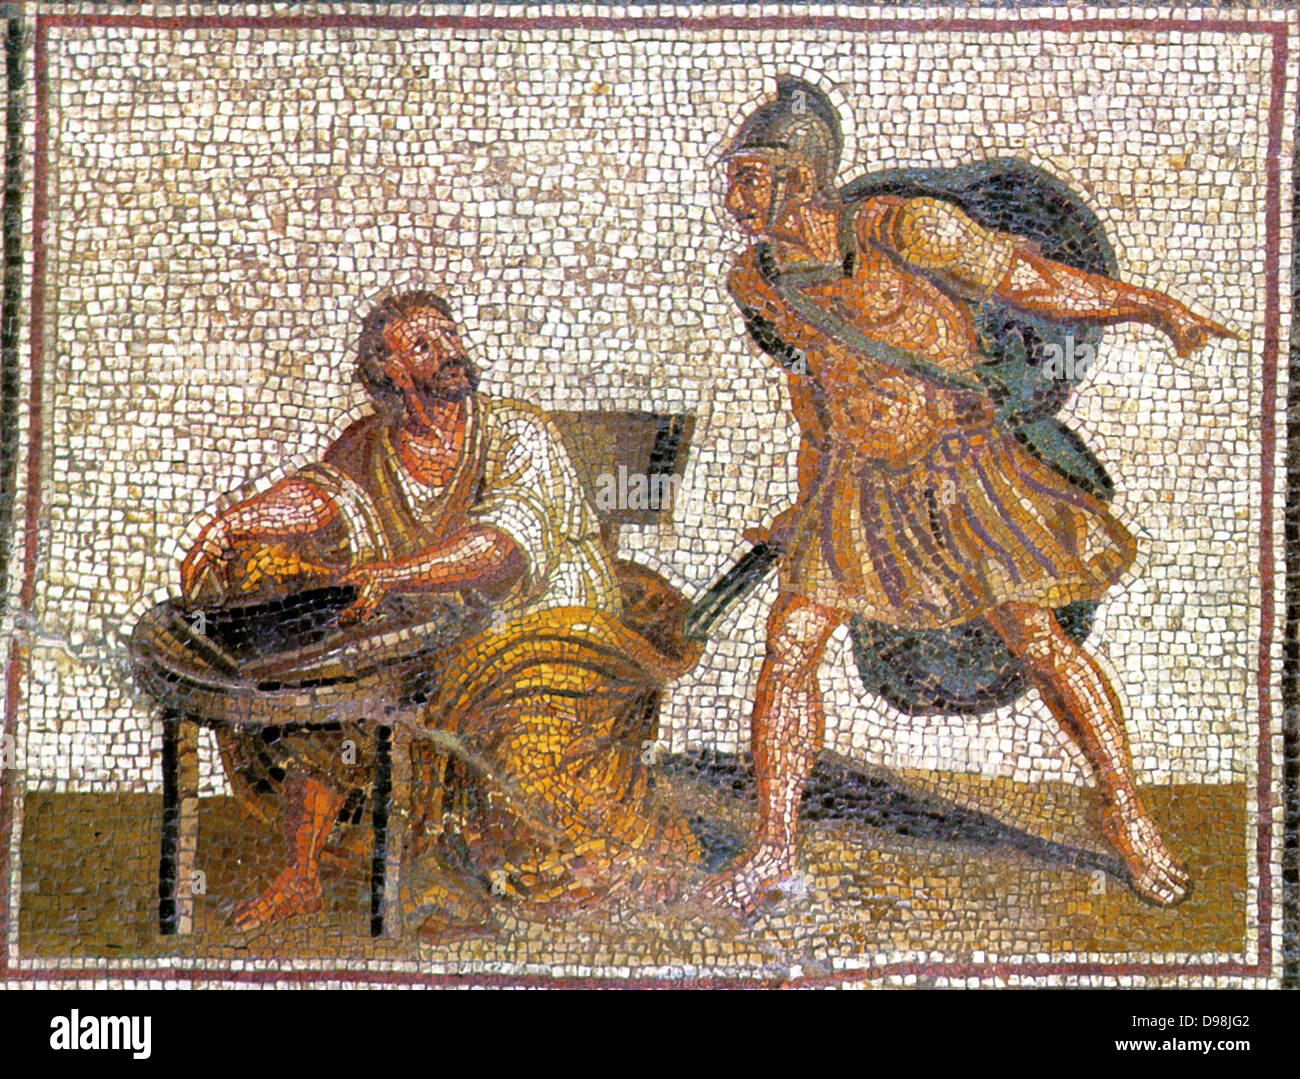 Die Ermordung des Archimedes. Ein römischer Soldat nähert sich mit einem Schwert zu töten, Archimedes 212 v. Chr. Stockfoto